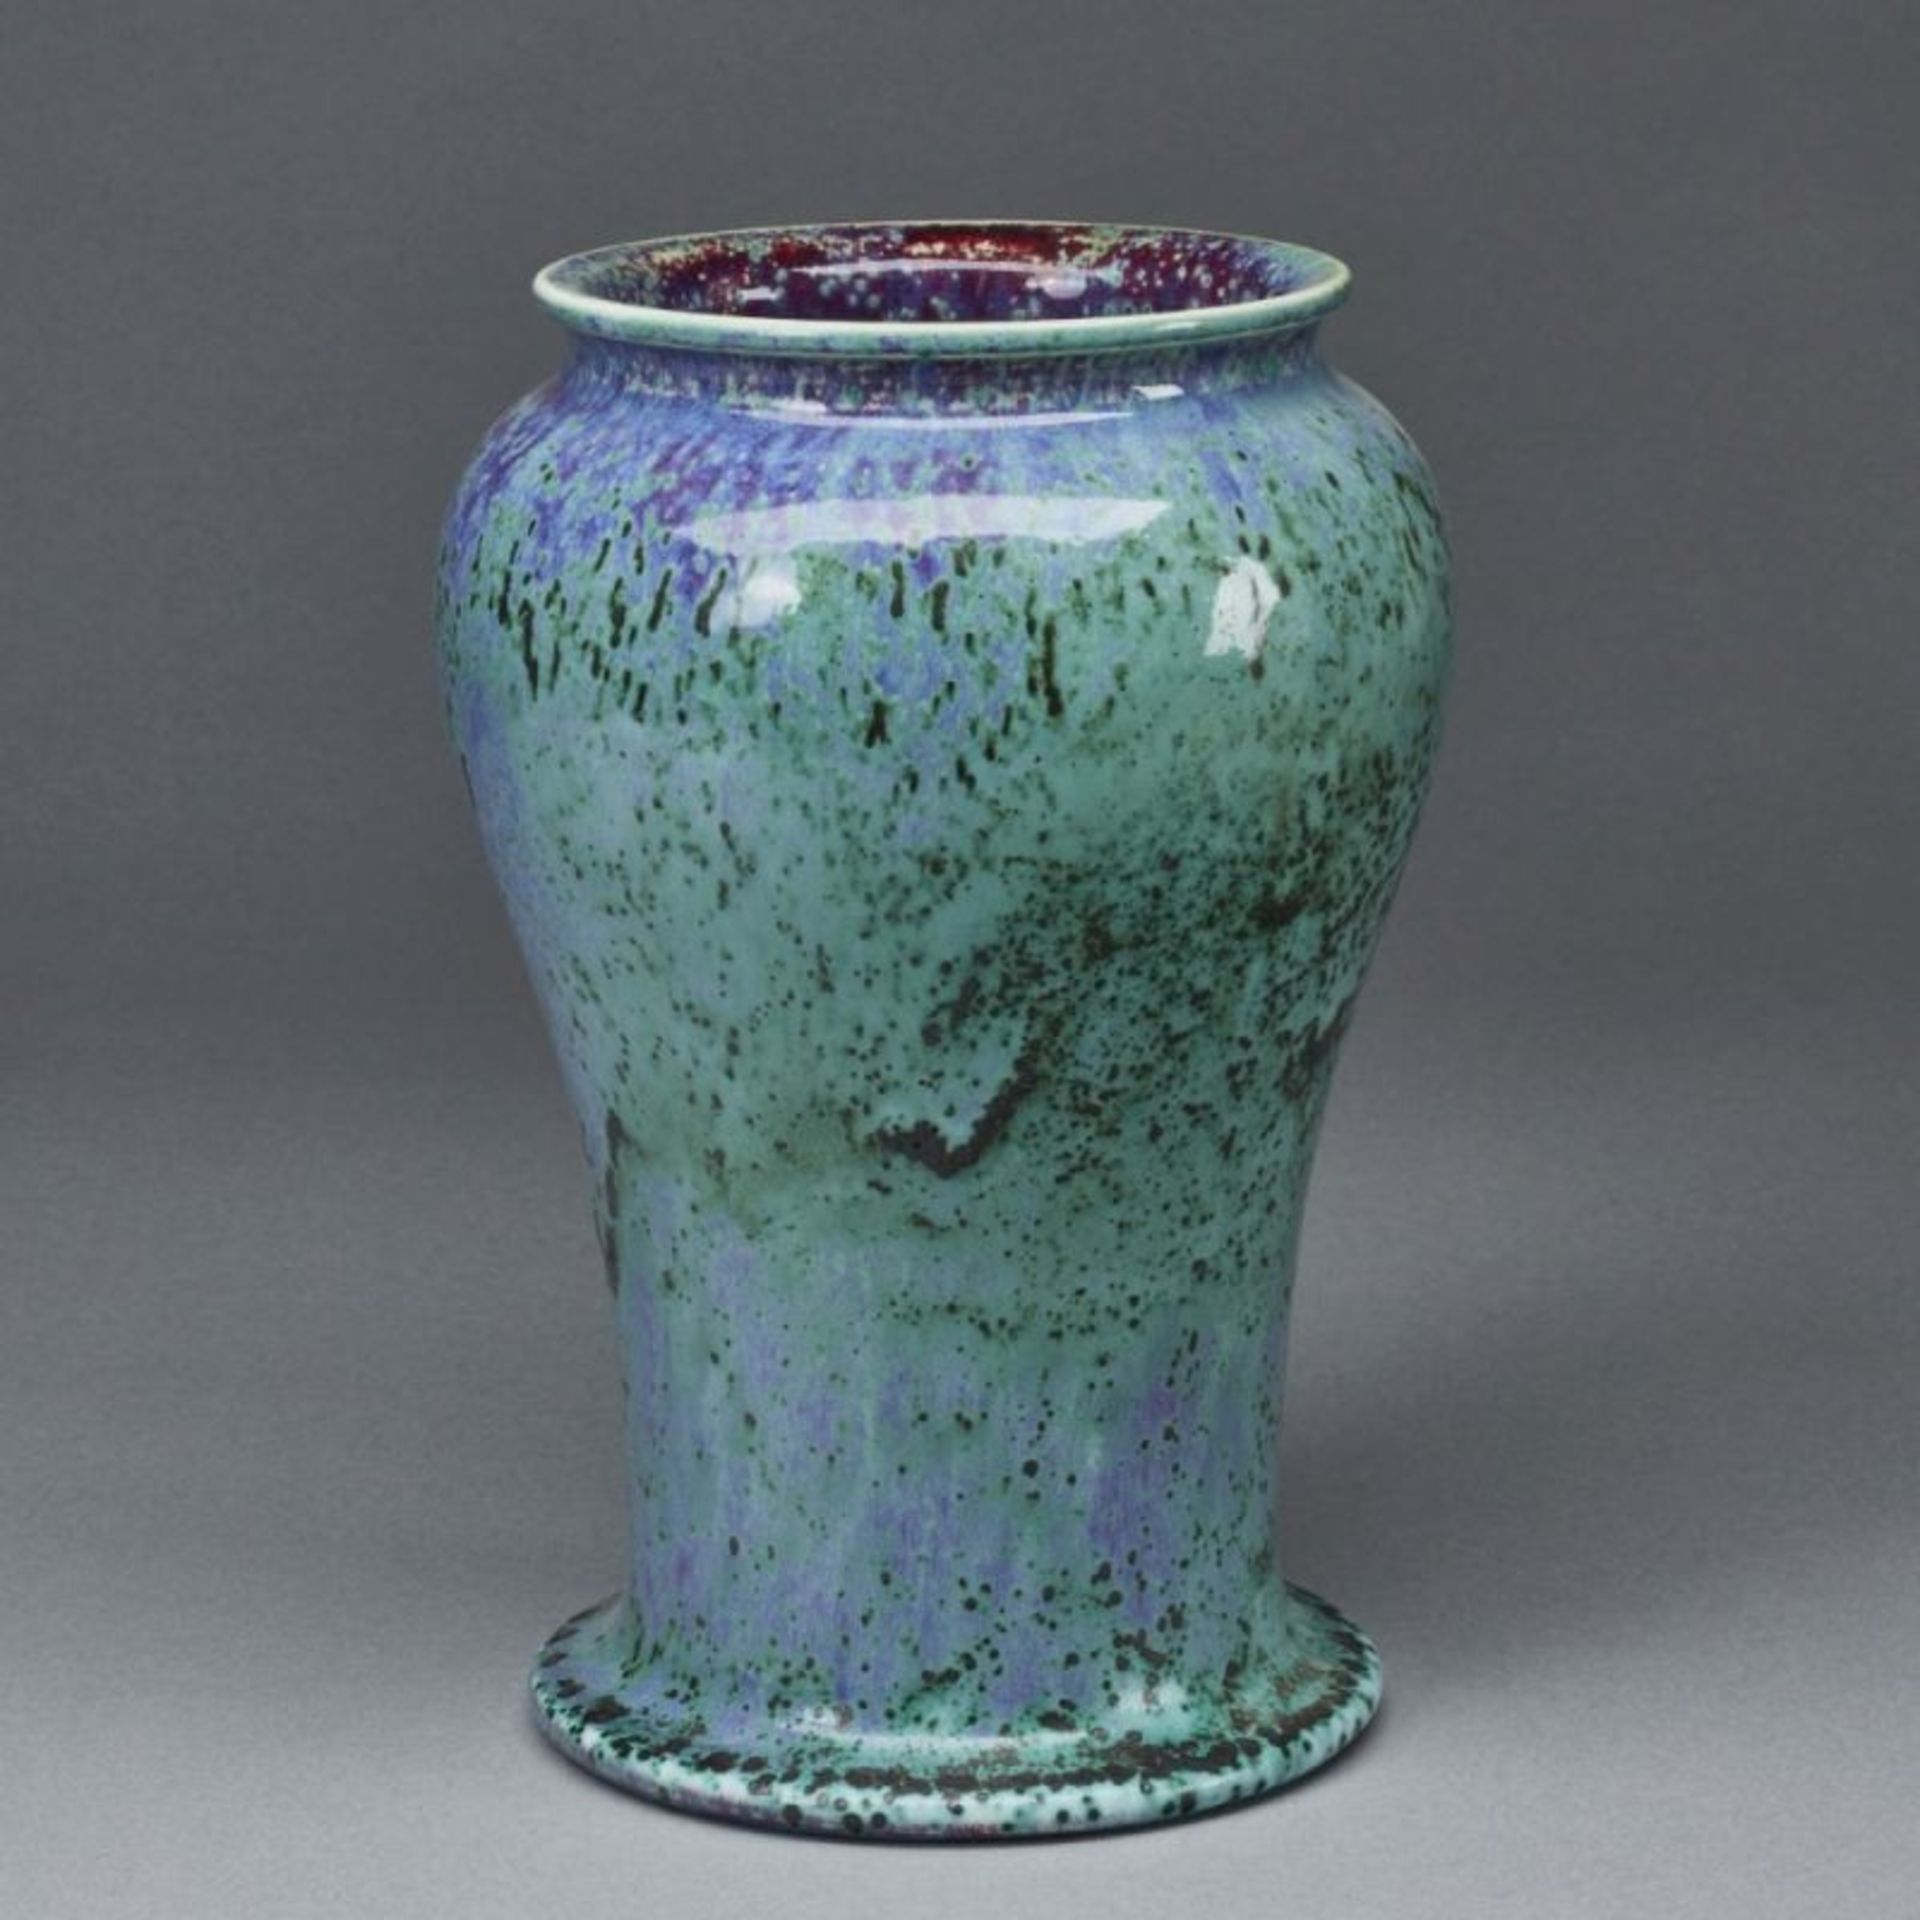 Vase mit Laufglasur. Ruskin Pottery, West Smethwick / England 1906. - Bild 2 aus 2